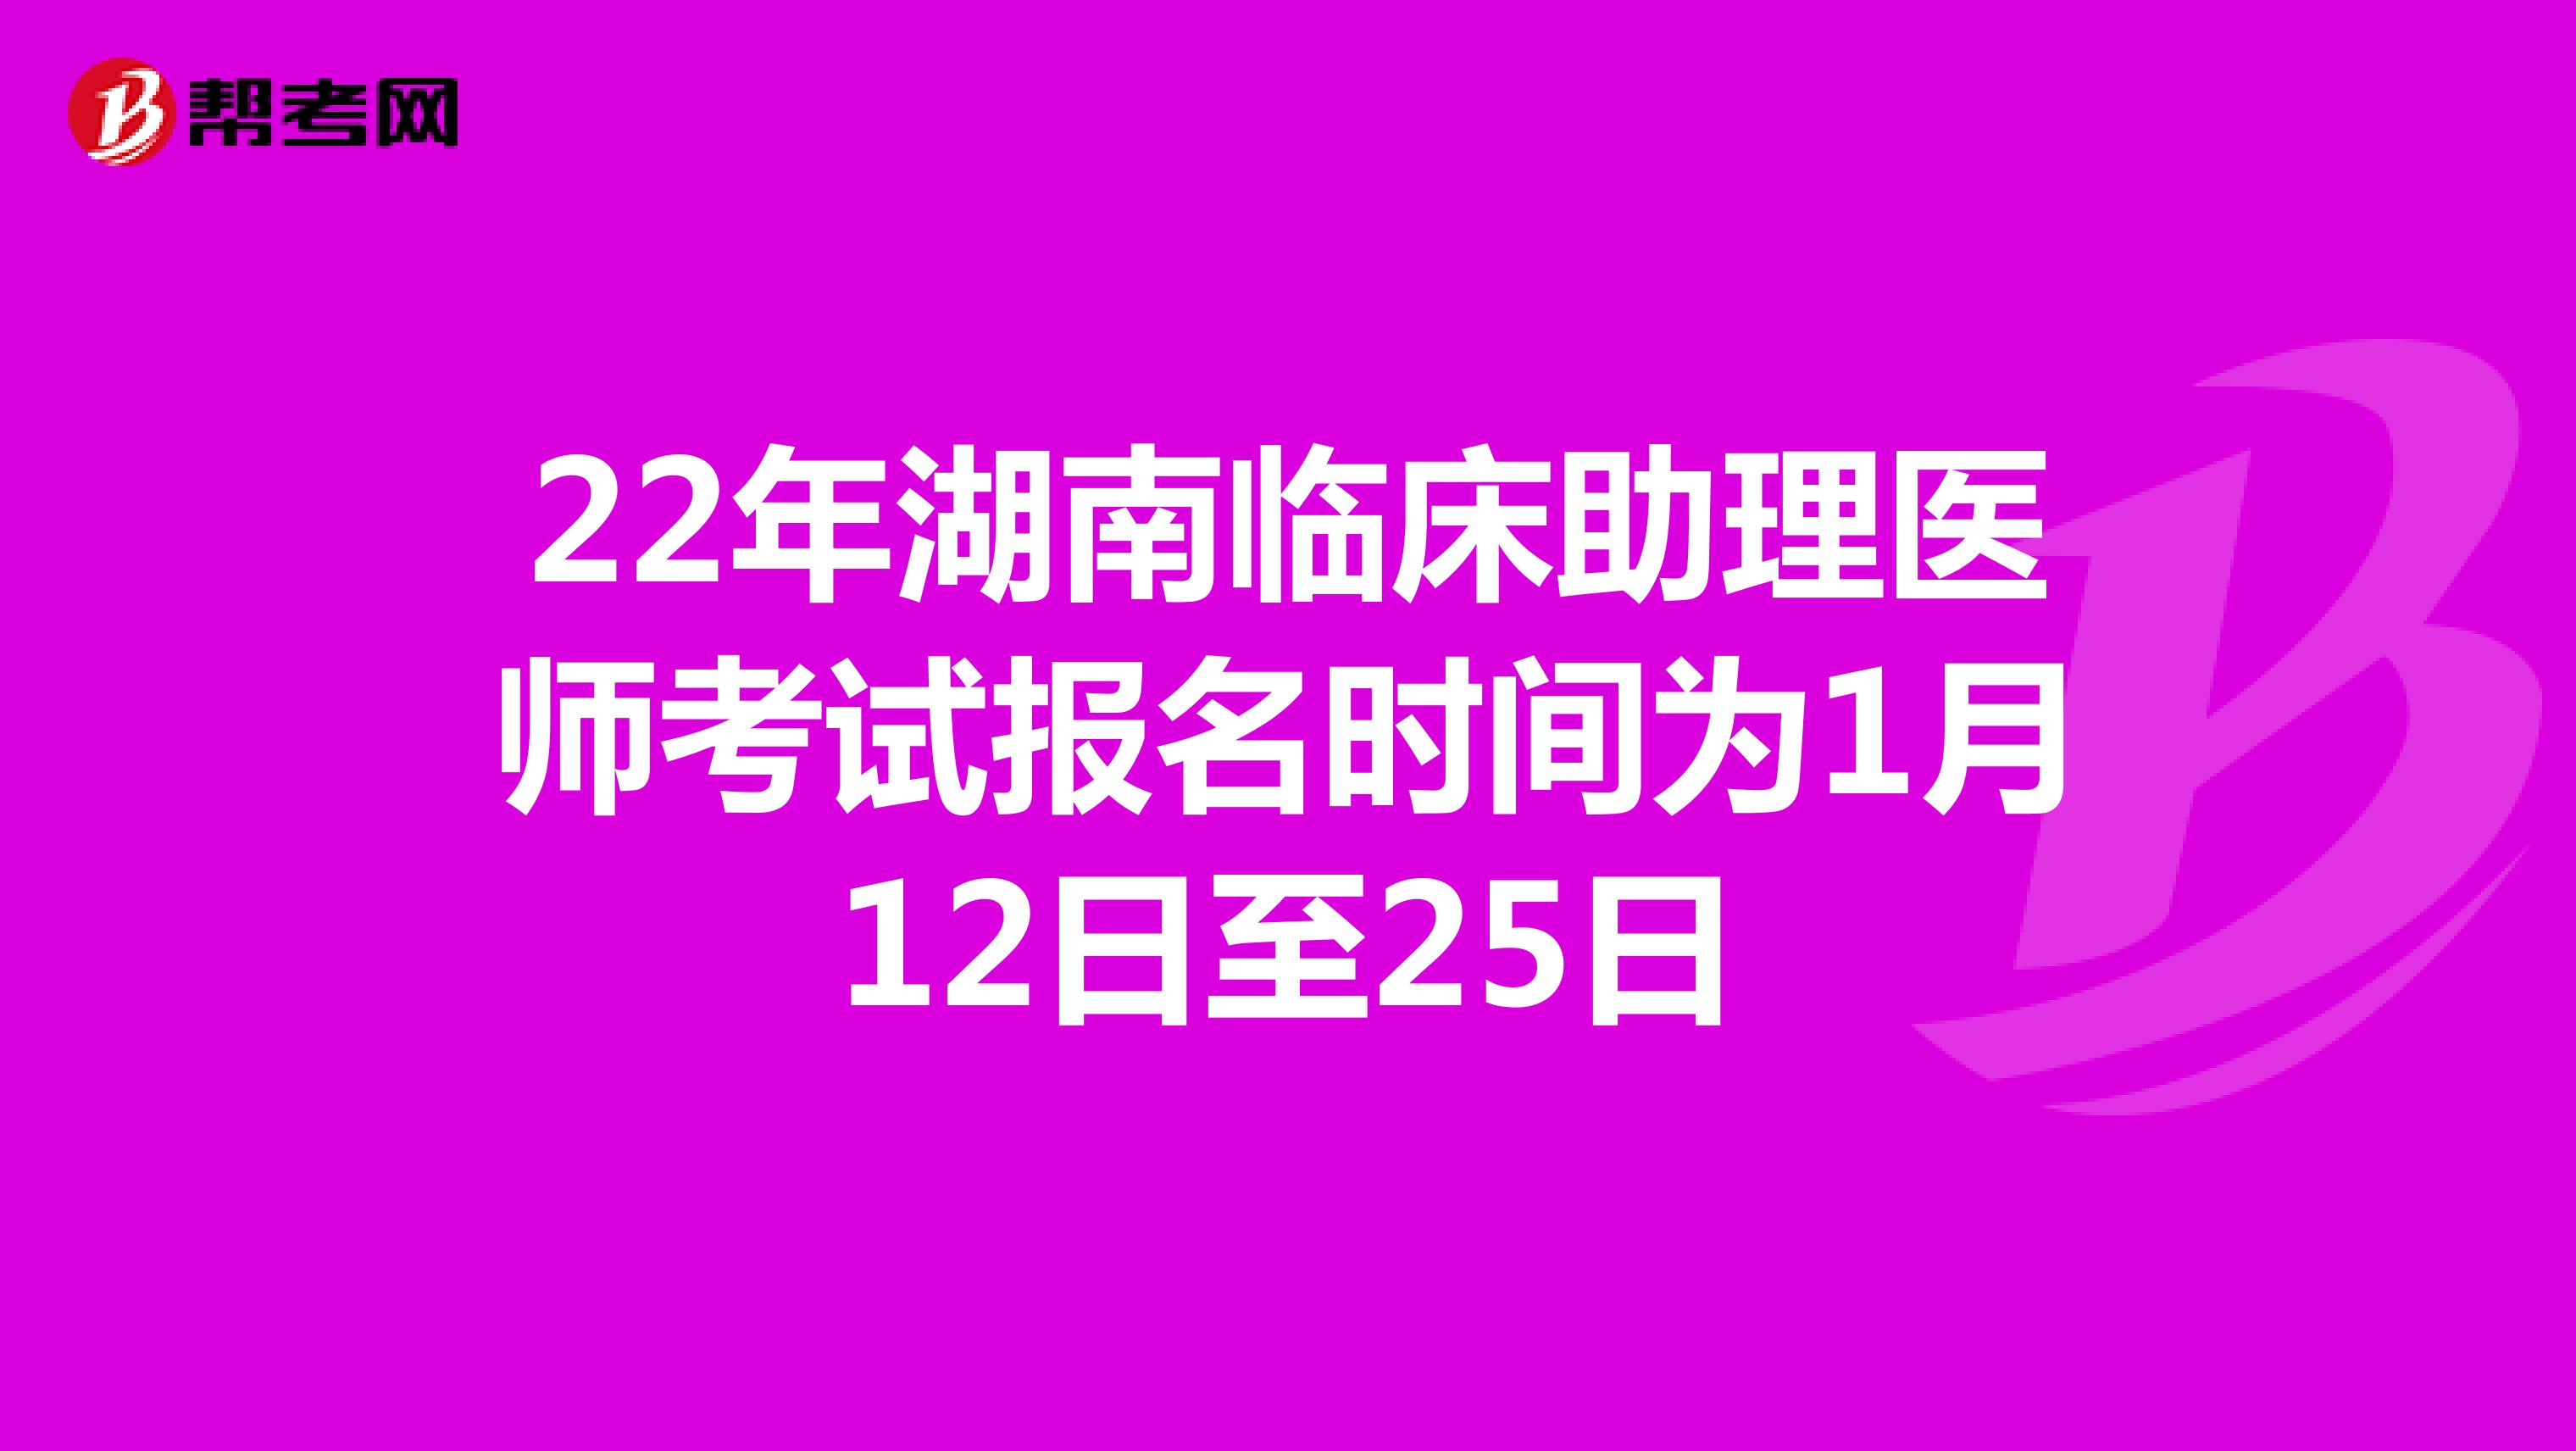 22年湖南临床助理医师考试报名时间为1月12日至25日